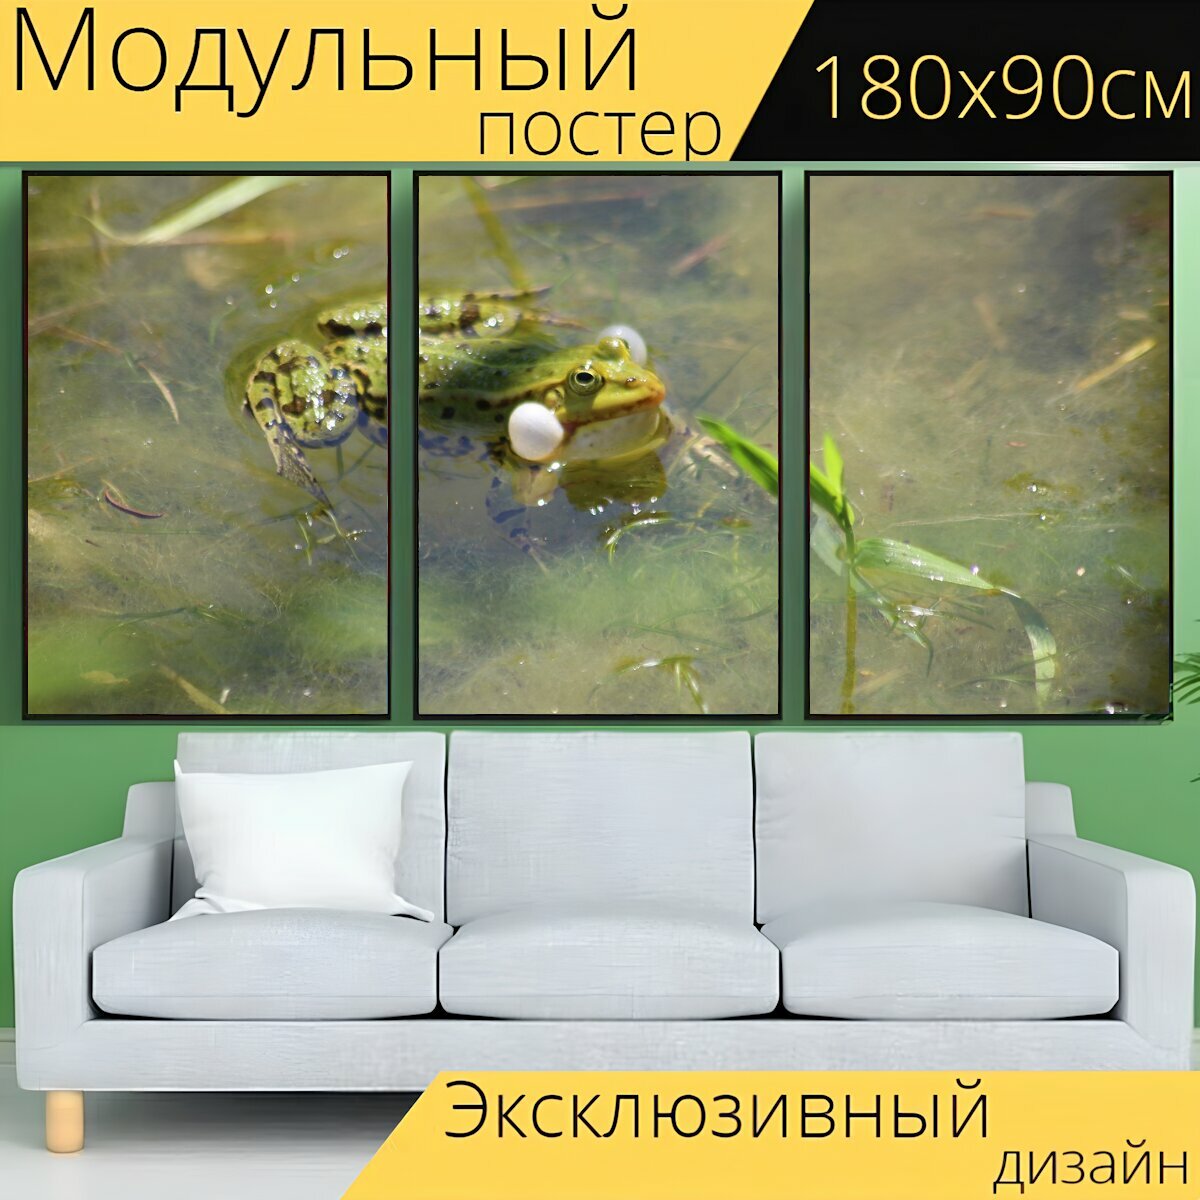 Модульный постер "Лягушка, пруд лягушка, водяная лягушка" 180 x 90 см. для интерьера